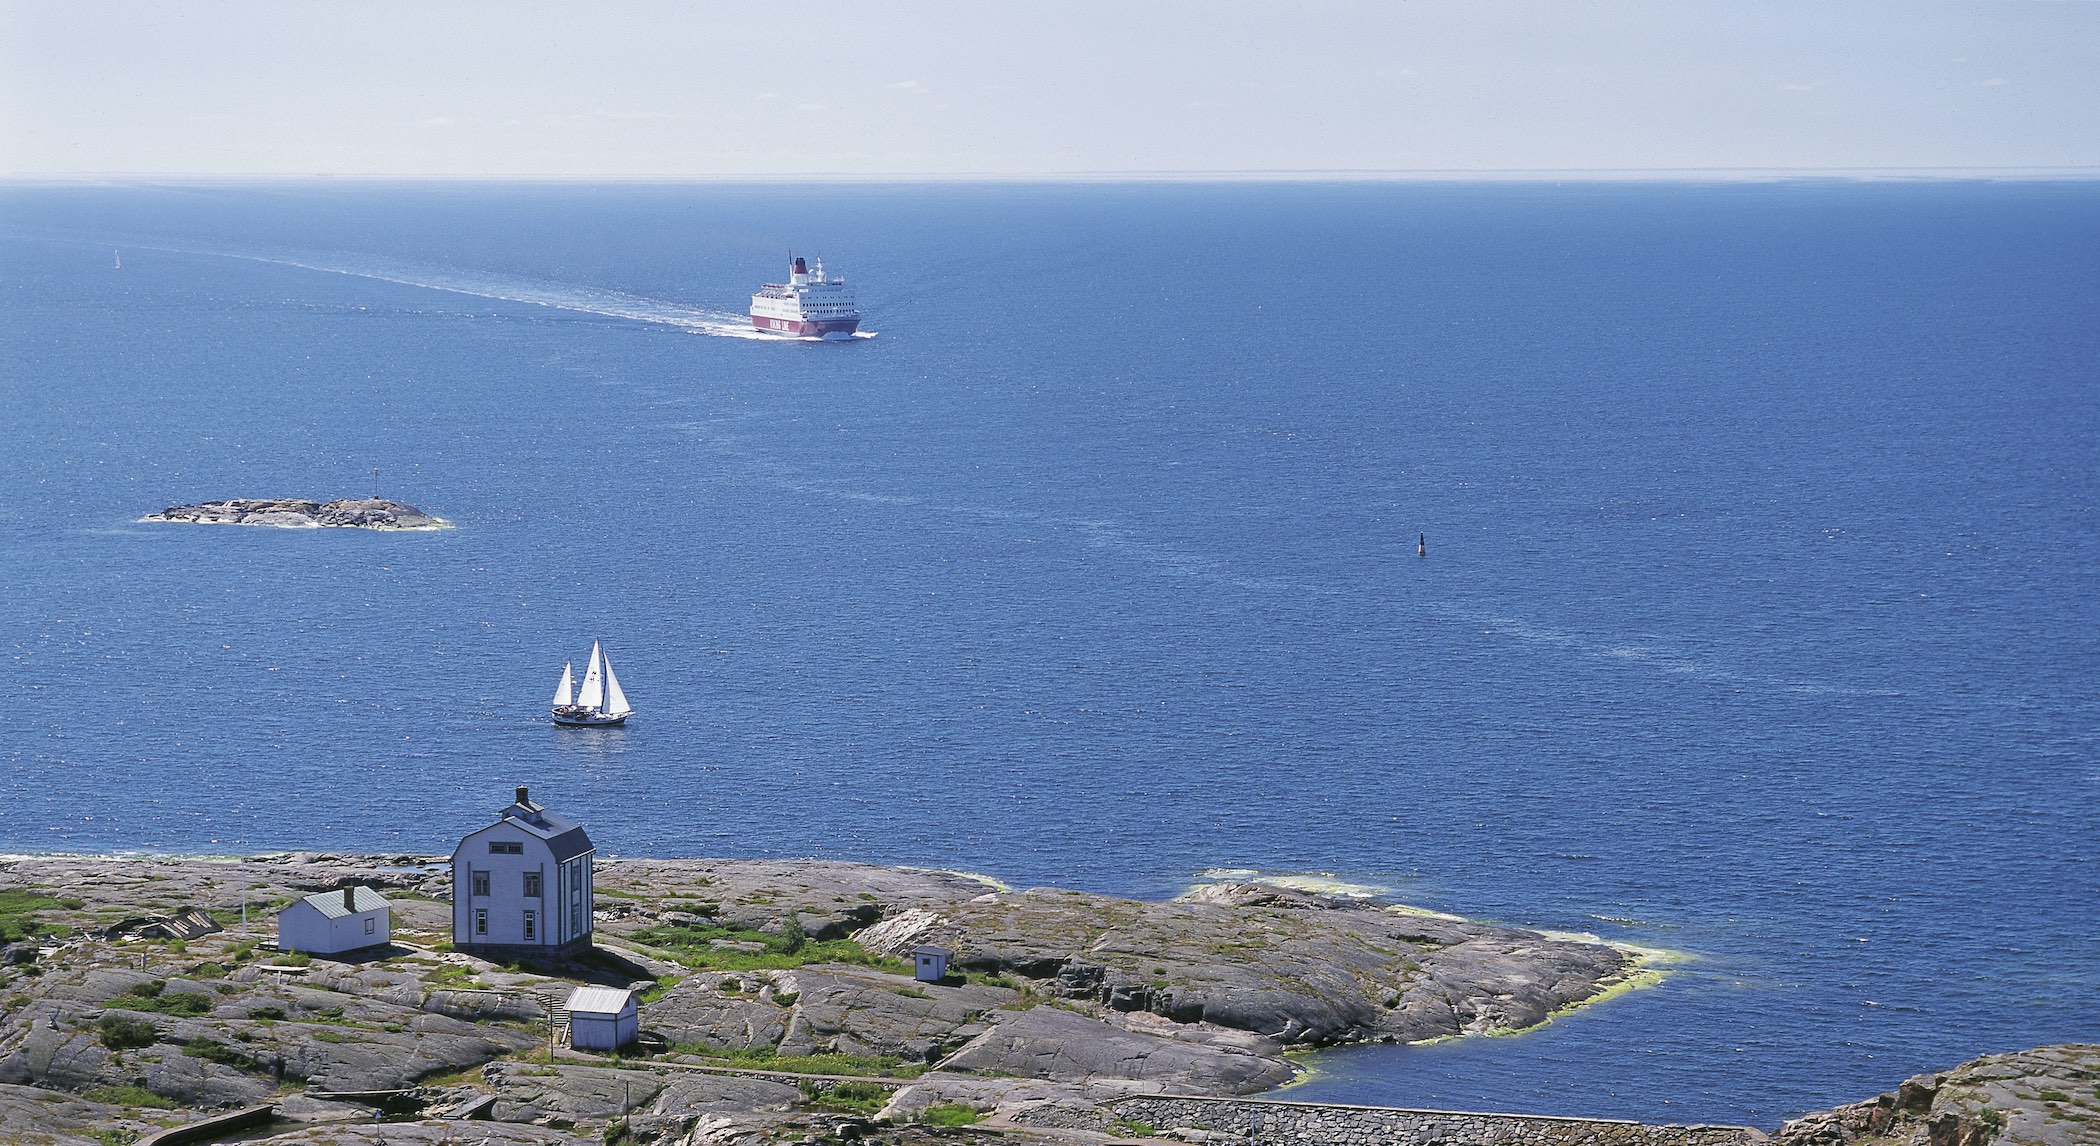 Viking Line ferry approaching Åland islands.